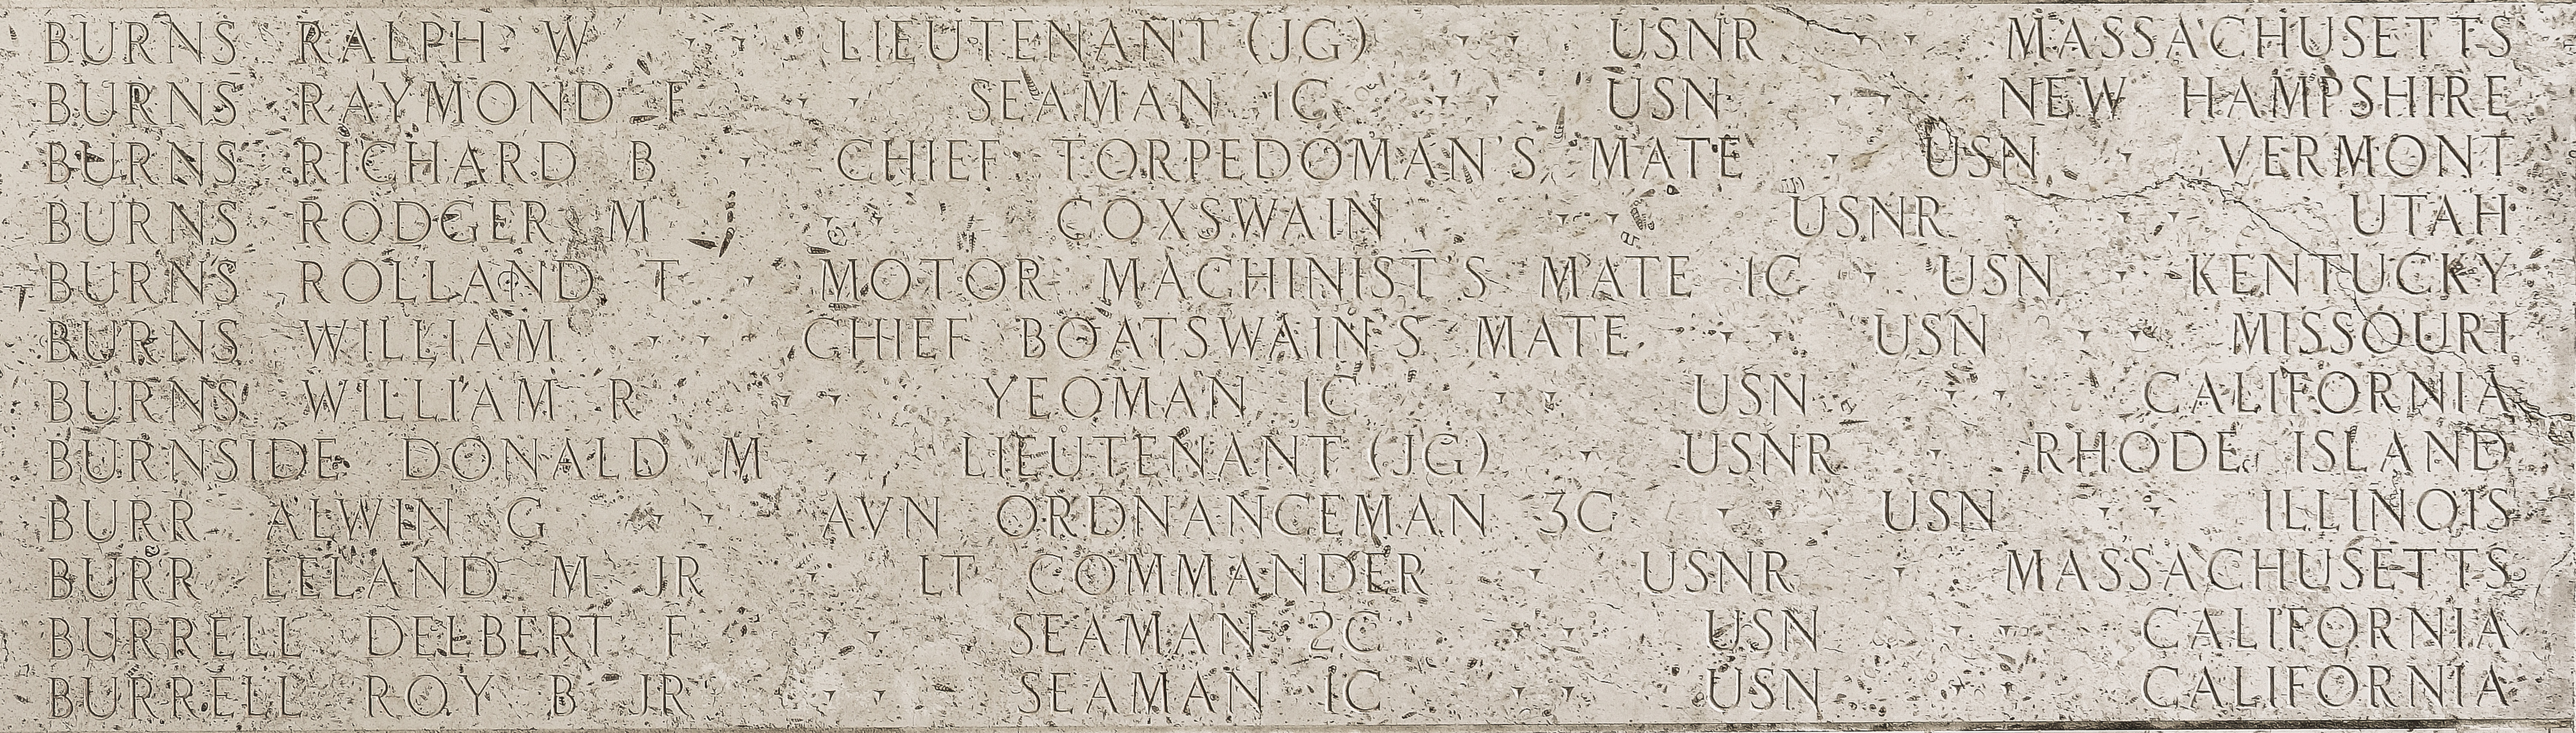 William  Burns, Chief Boatswain's Mate